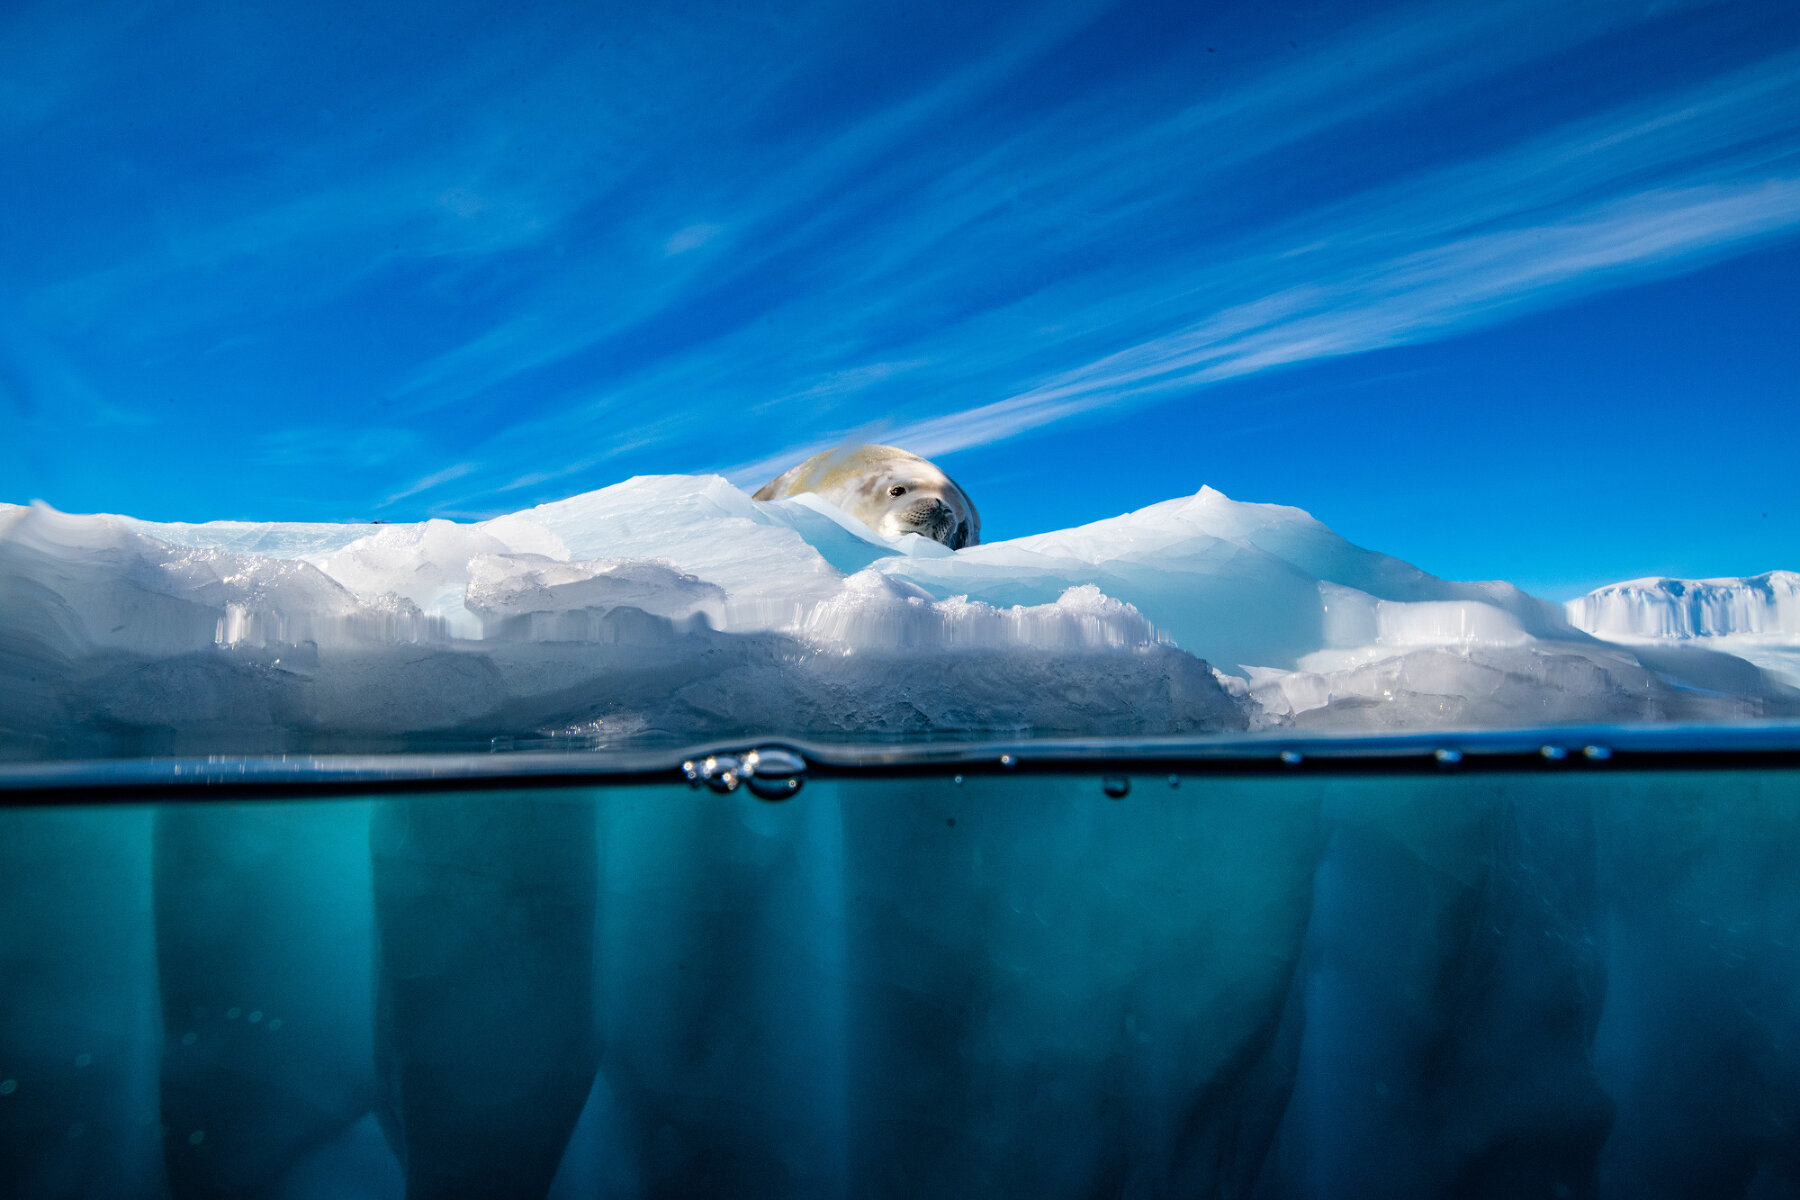 <p>Тюлень-крабоед отдыхает на льдине. Крабоед относится к пагофильным тюленям &ndash; то есть к тюленям, которые живут на льду. С уменьшением количества льда в мировом океане, исчезают местообитания тюленей, что ставит их выживание под угрозу</p>